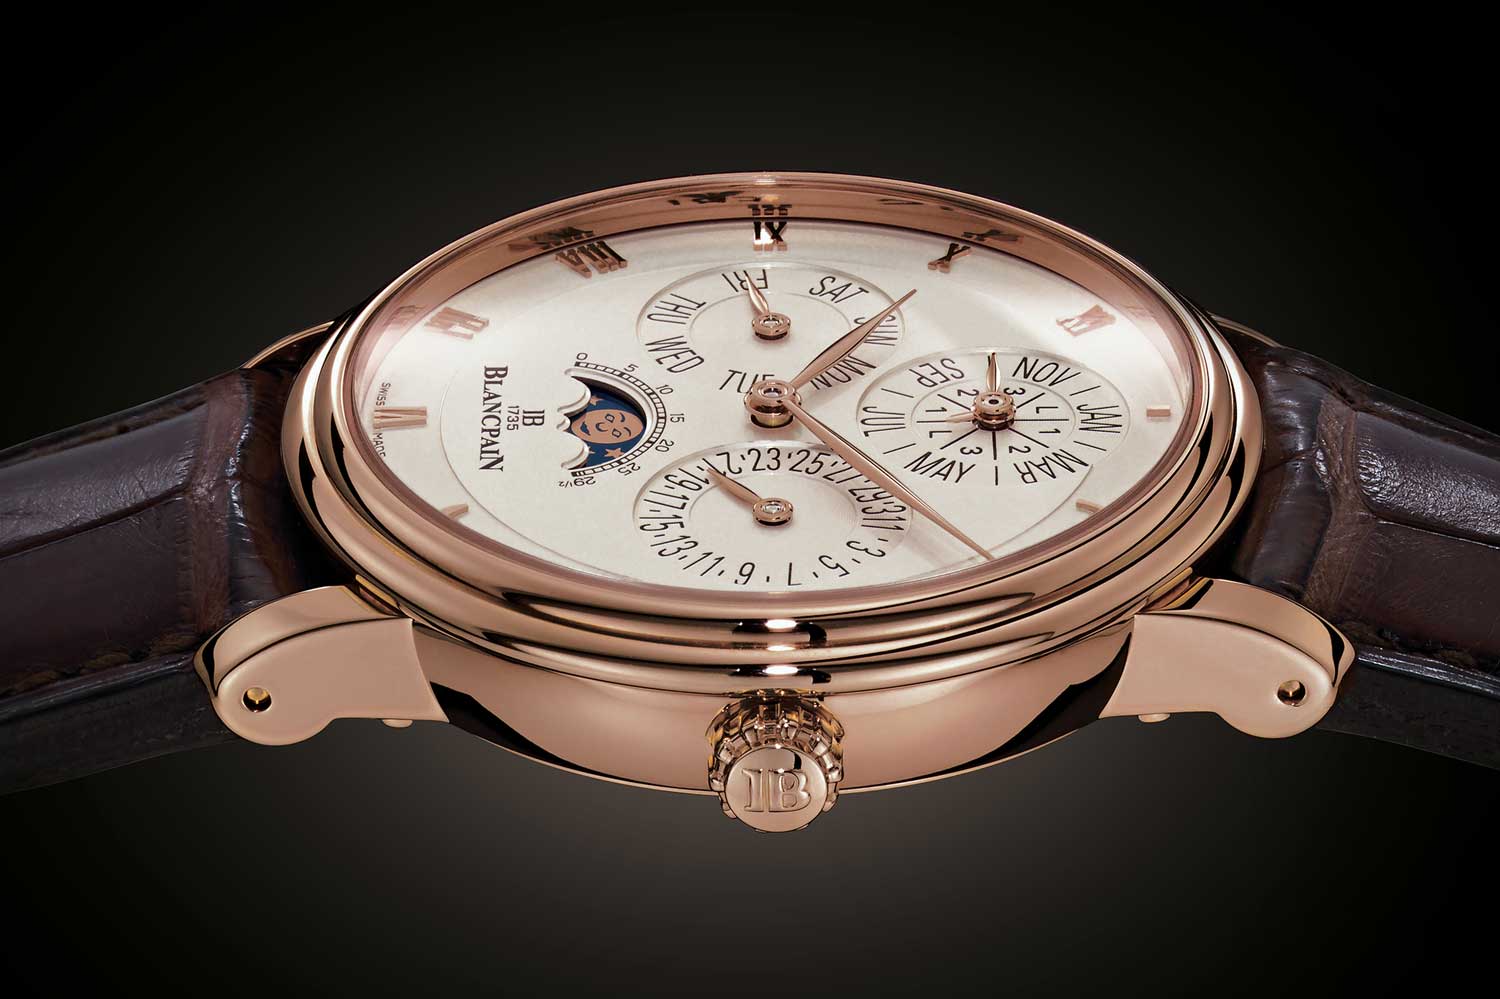 Blancpain Villeret Quantième Perpetual chiếc đồng hồ với thiết kế gọn gàng